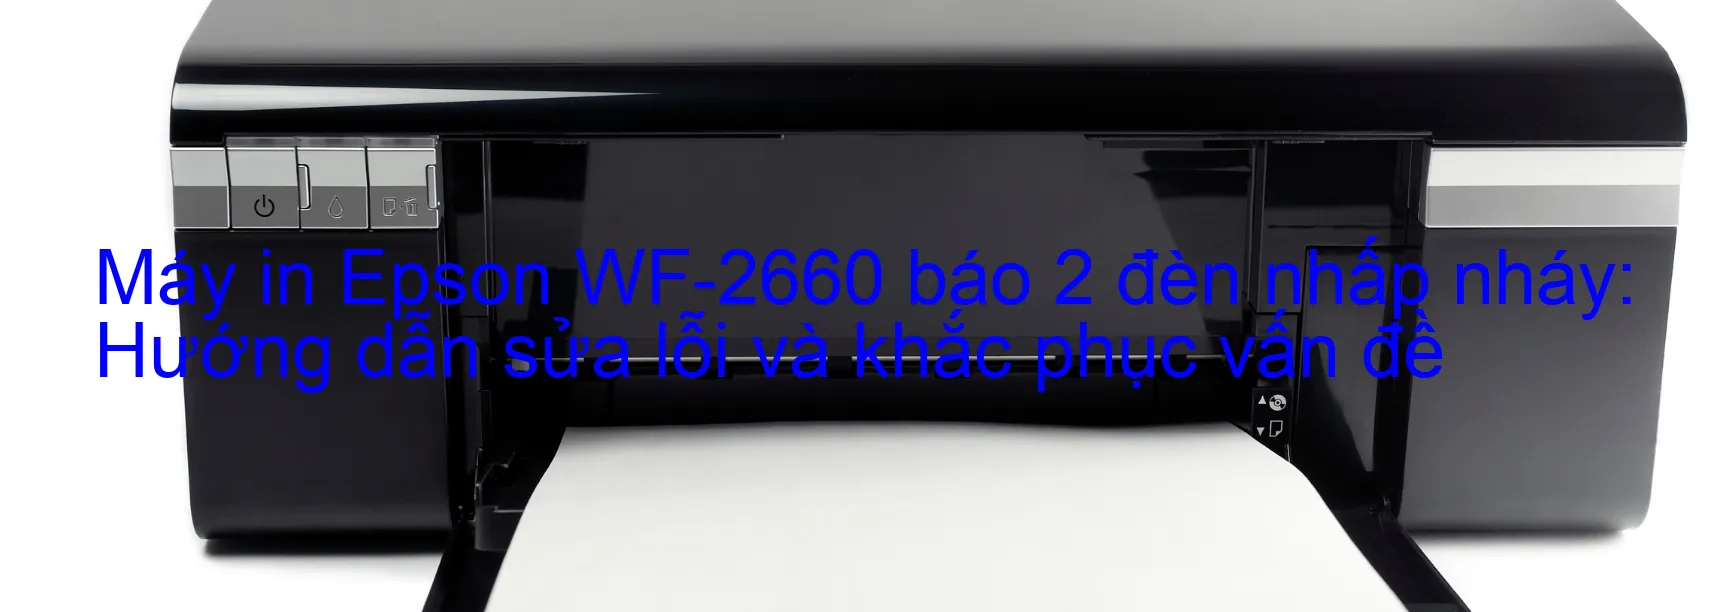 Máy in Epson WF-2660 báo 2 đèn nhấp nháy: Hướng dẫn sửa lỗi và khắc phục vấn đề